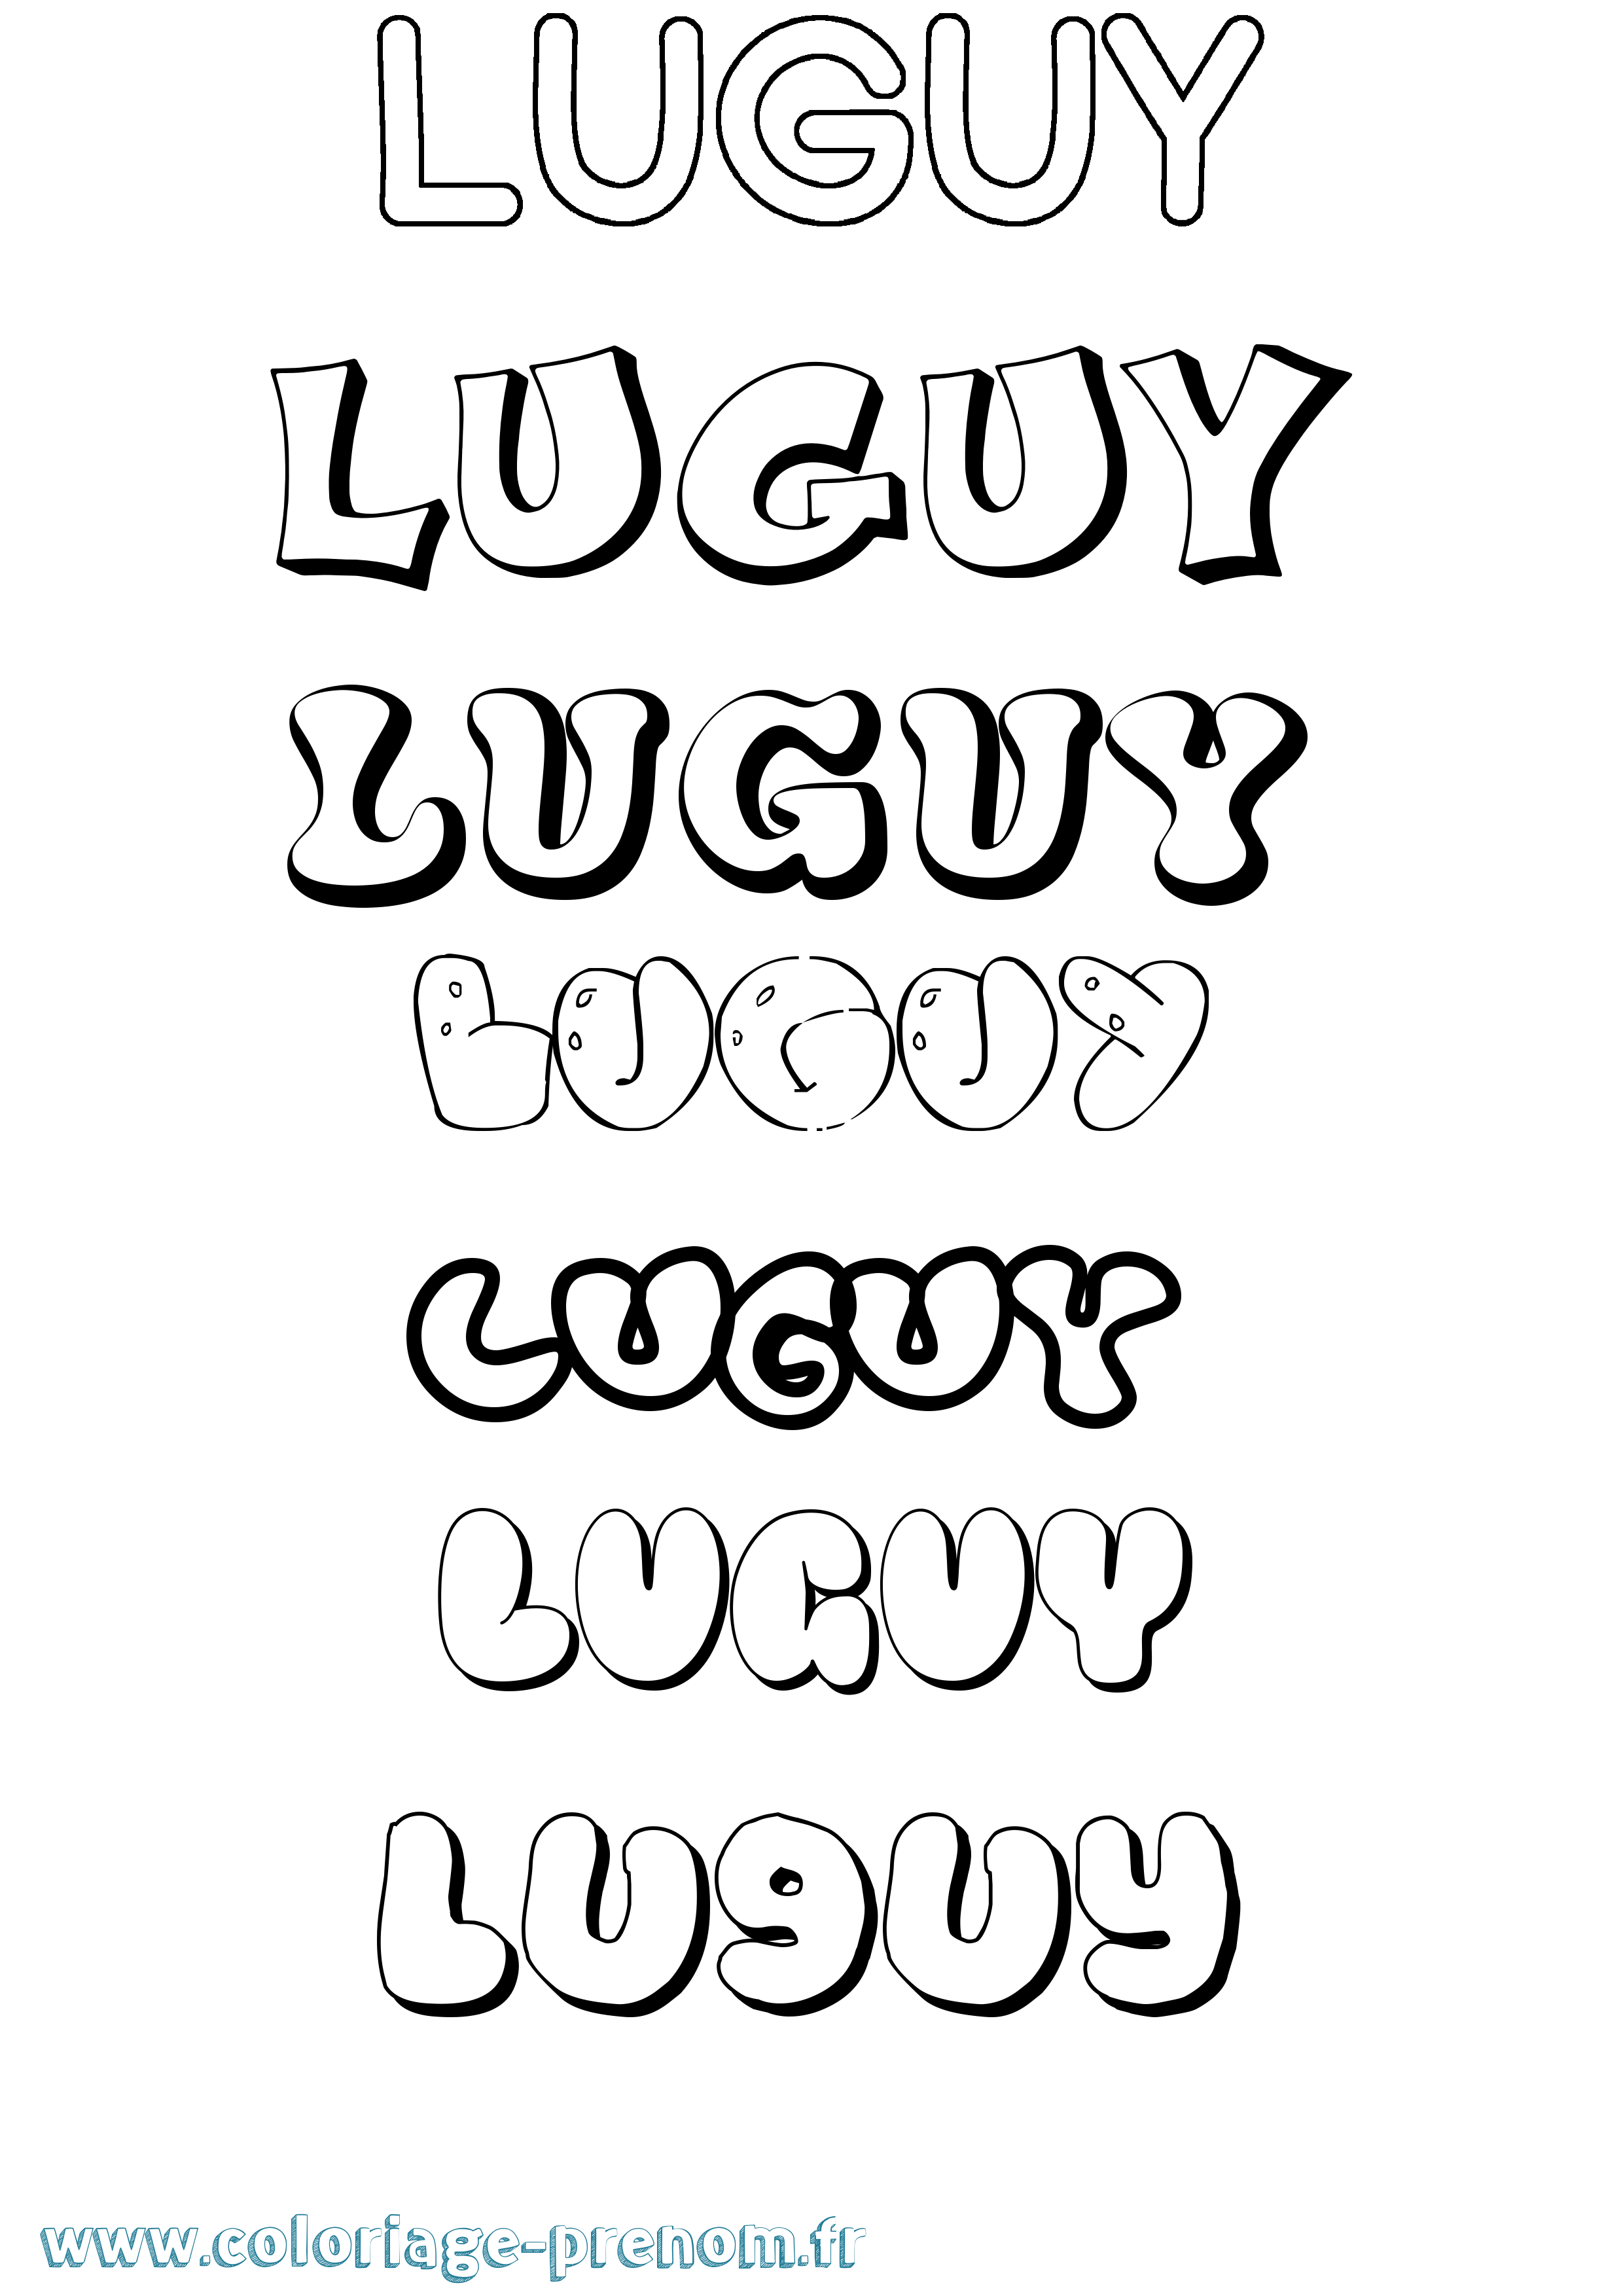 Coloriage prénom Luguy Bubble